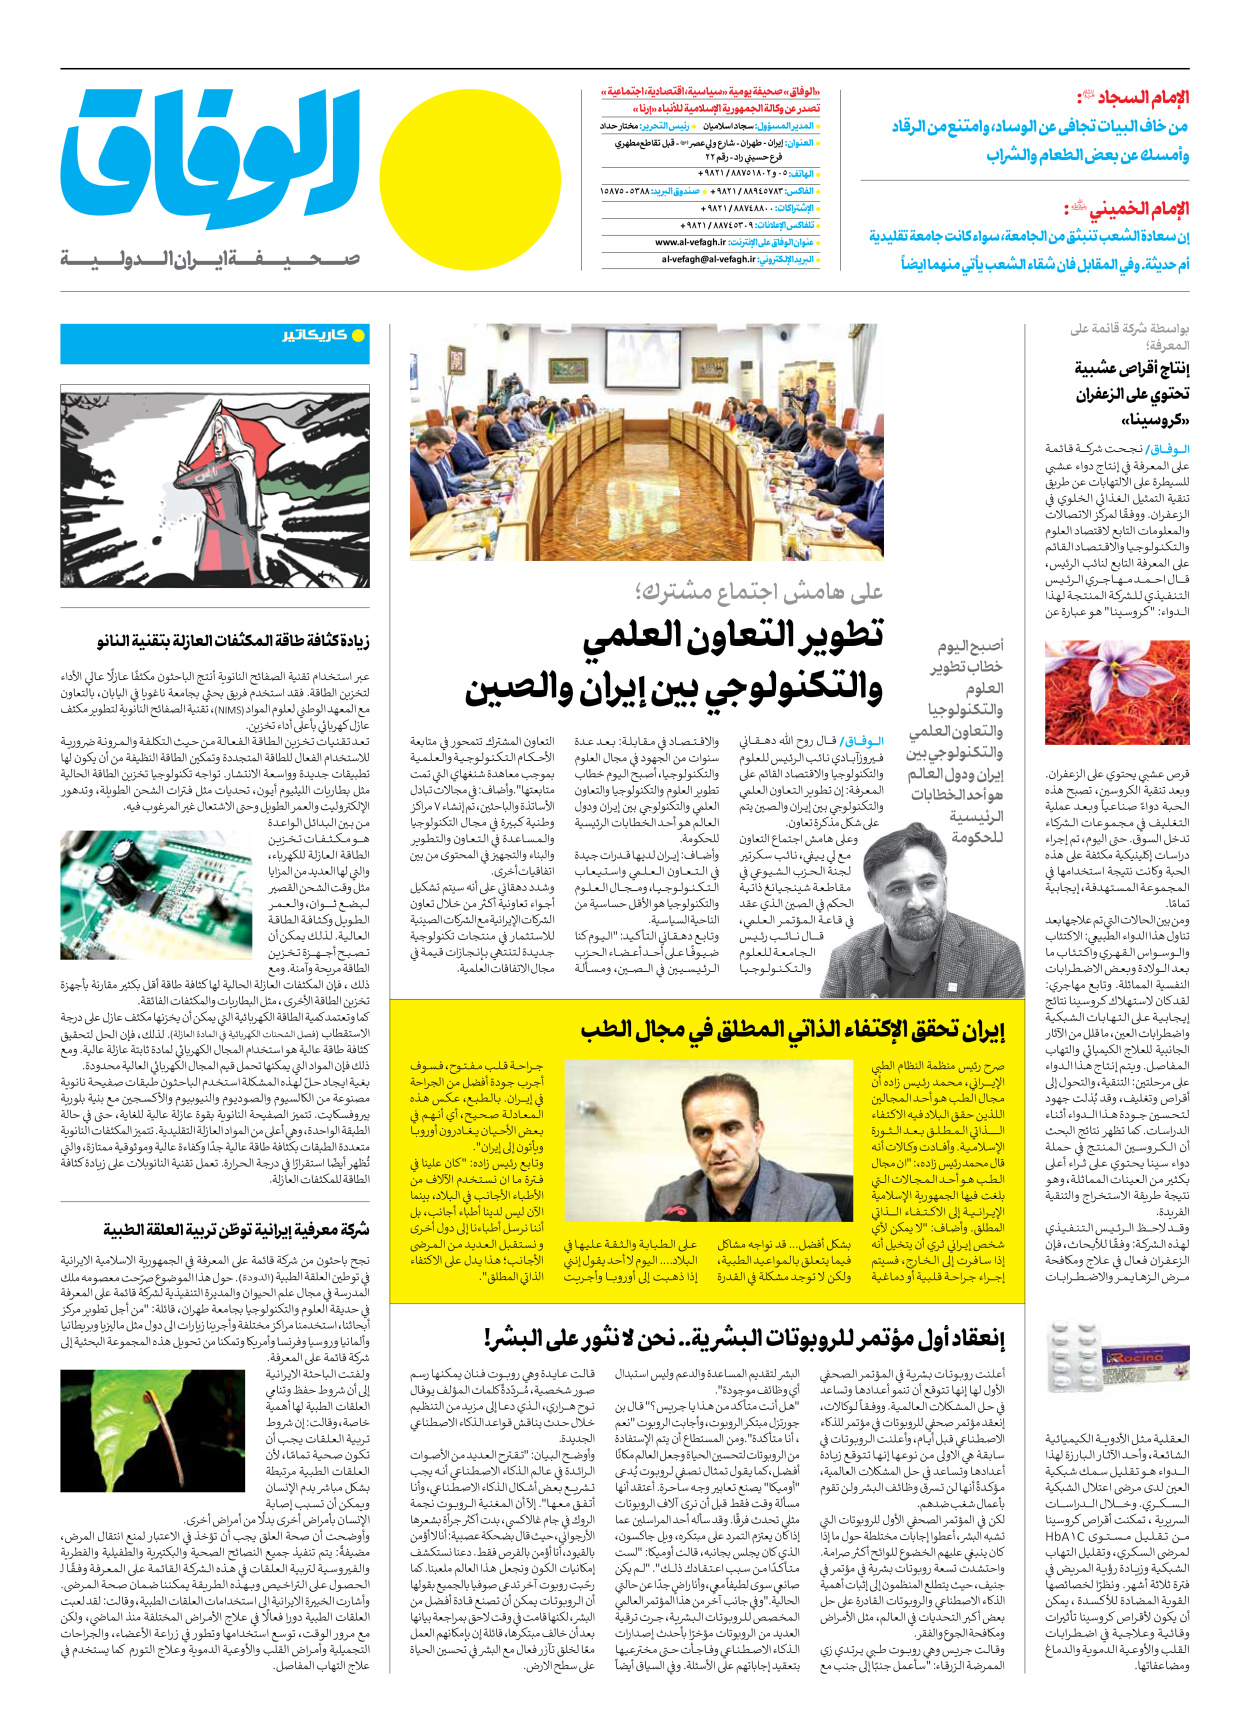 صحیفة ایران الدولیة الوفاق - العدد سبعة آلاف ومائتان وثمانون - ١١ يوليو ٢٠٢٣ - الصفحة ۱۲